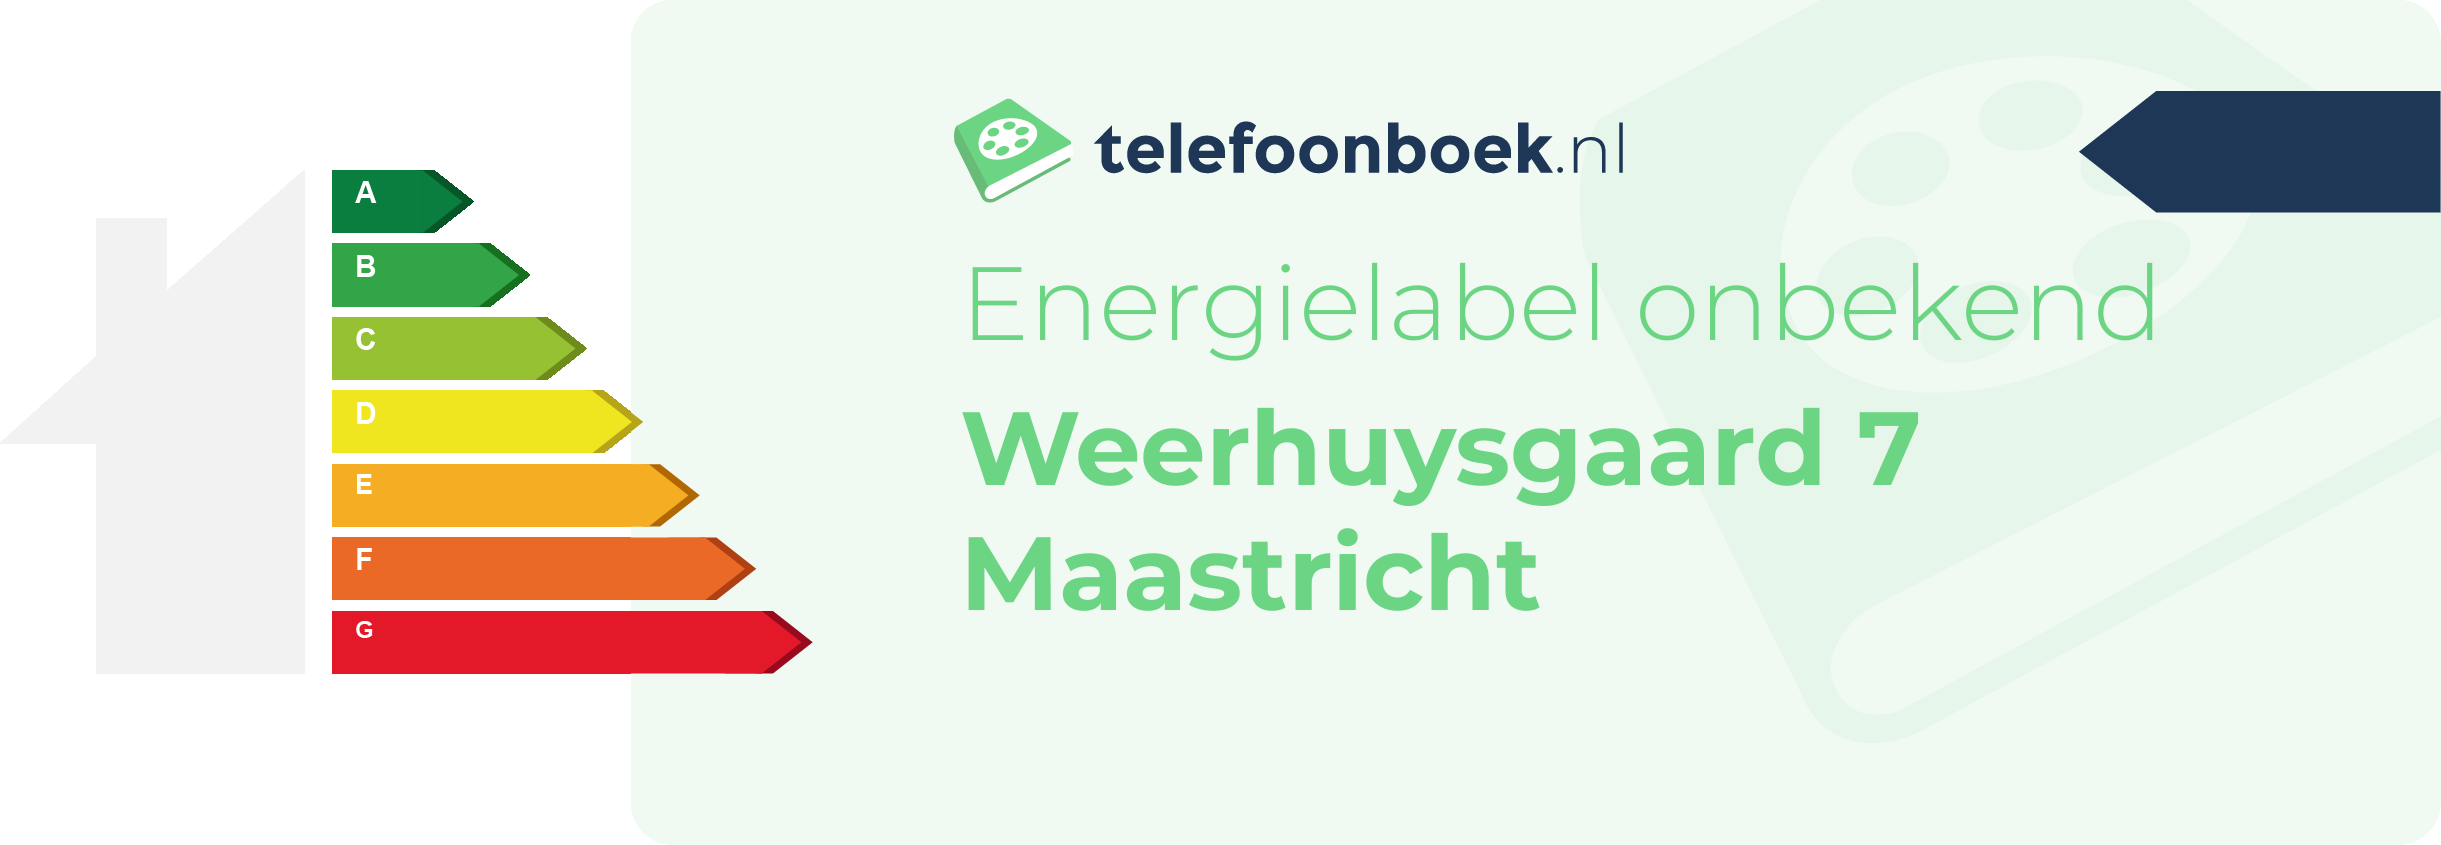 Energielabel Weerhuysgaard 7 Maastricht